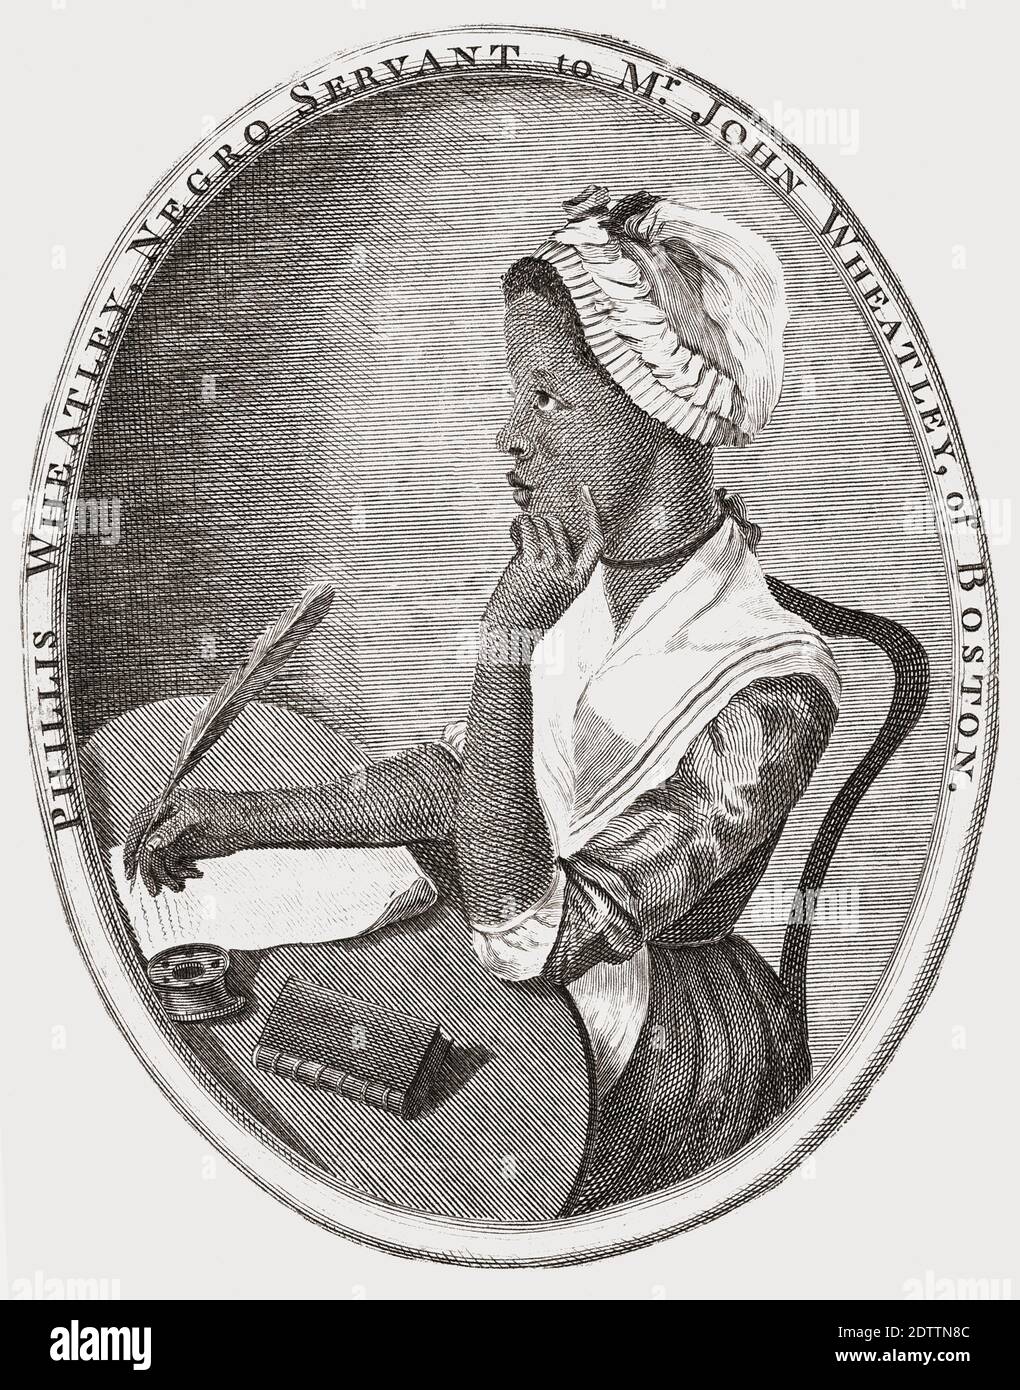 Philis Wheatley, c. 1753 - 1784. Nació en África Occidental, fue vendida a la esclavitud antes de los diez años y transportada a Norteamérica, donde fue comprada por la familia Wheatley en Boston, quien le enseñó a leer y escribir. En 1773 había escrito un libro de poesía y se convirtió en la primera autora afroamericana en publicar trabajos. Foto de stock